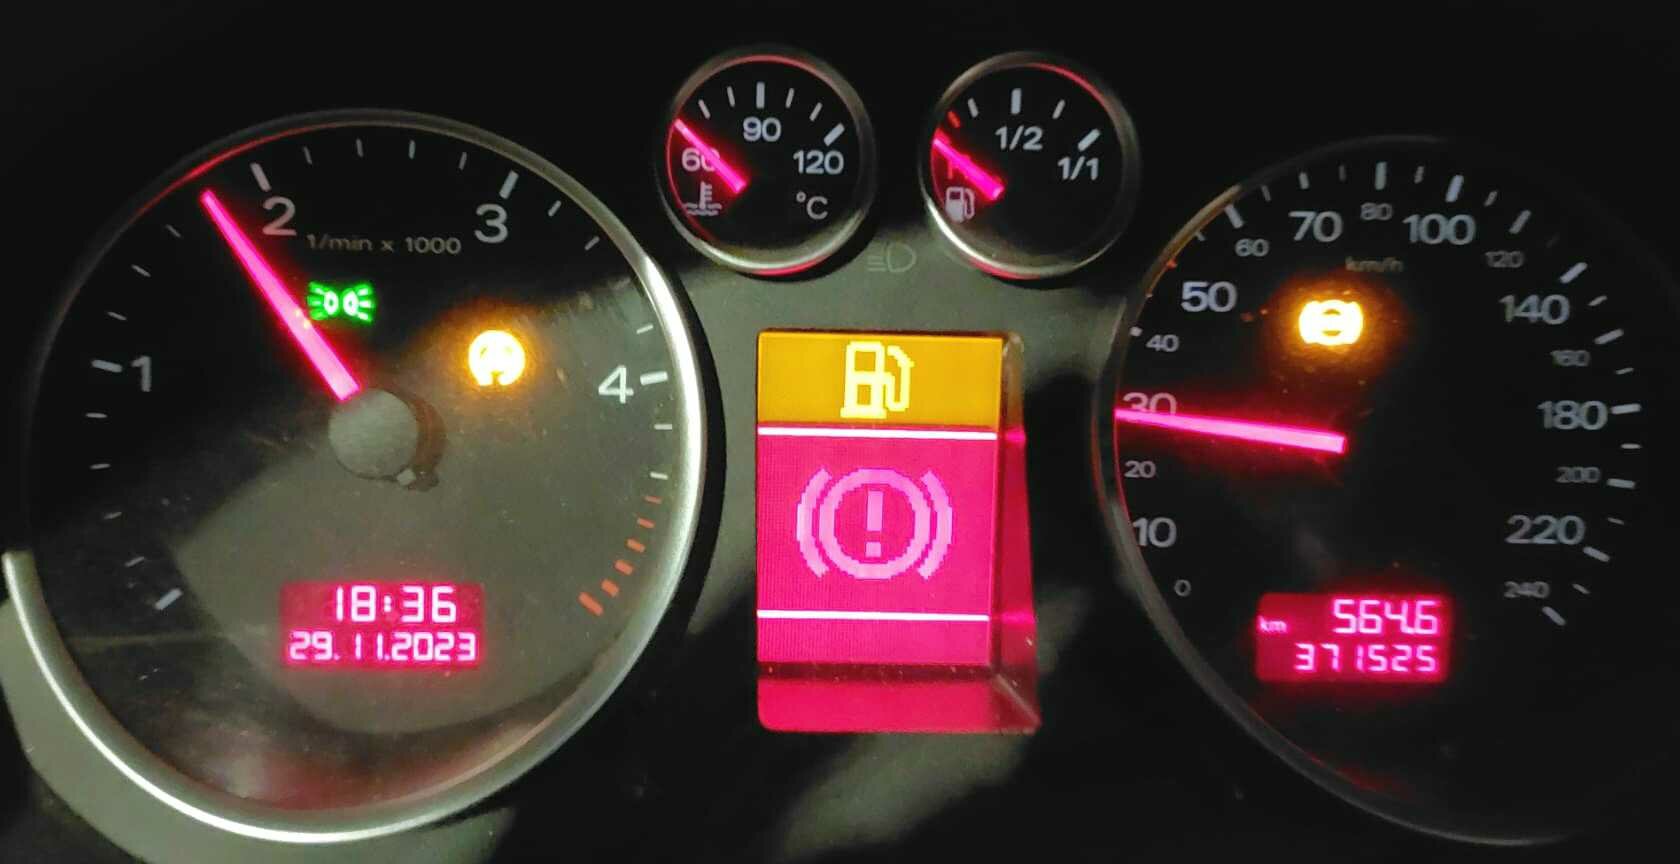 Wintereinbruch, -3°C und die Batterie innerhalb von 10h komplett leer,  danach unerklärliche Fehler, DIAGNOSE nicht möglich - Technik - Audi A2  Club Deutschland